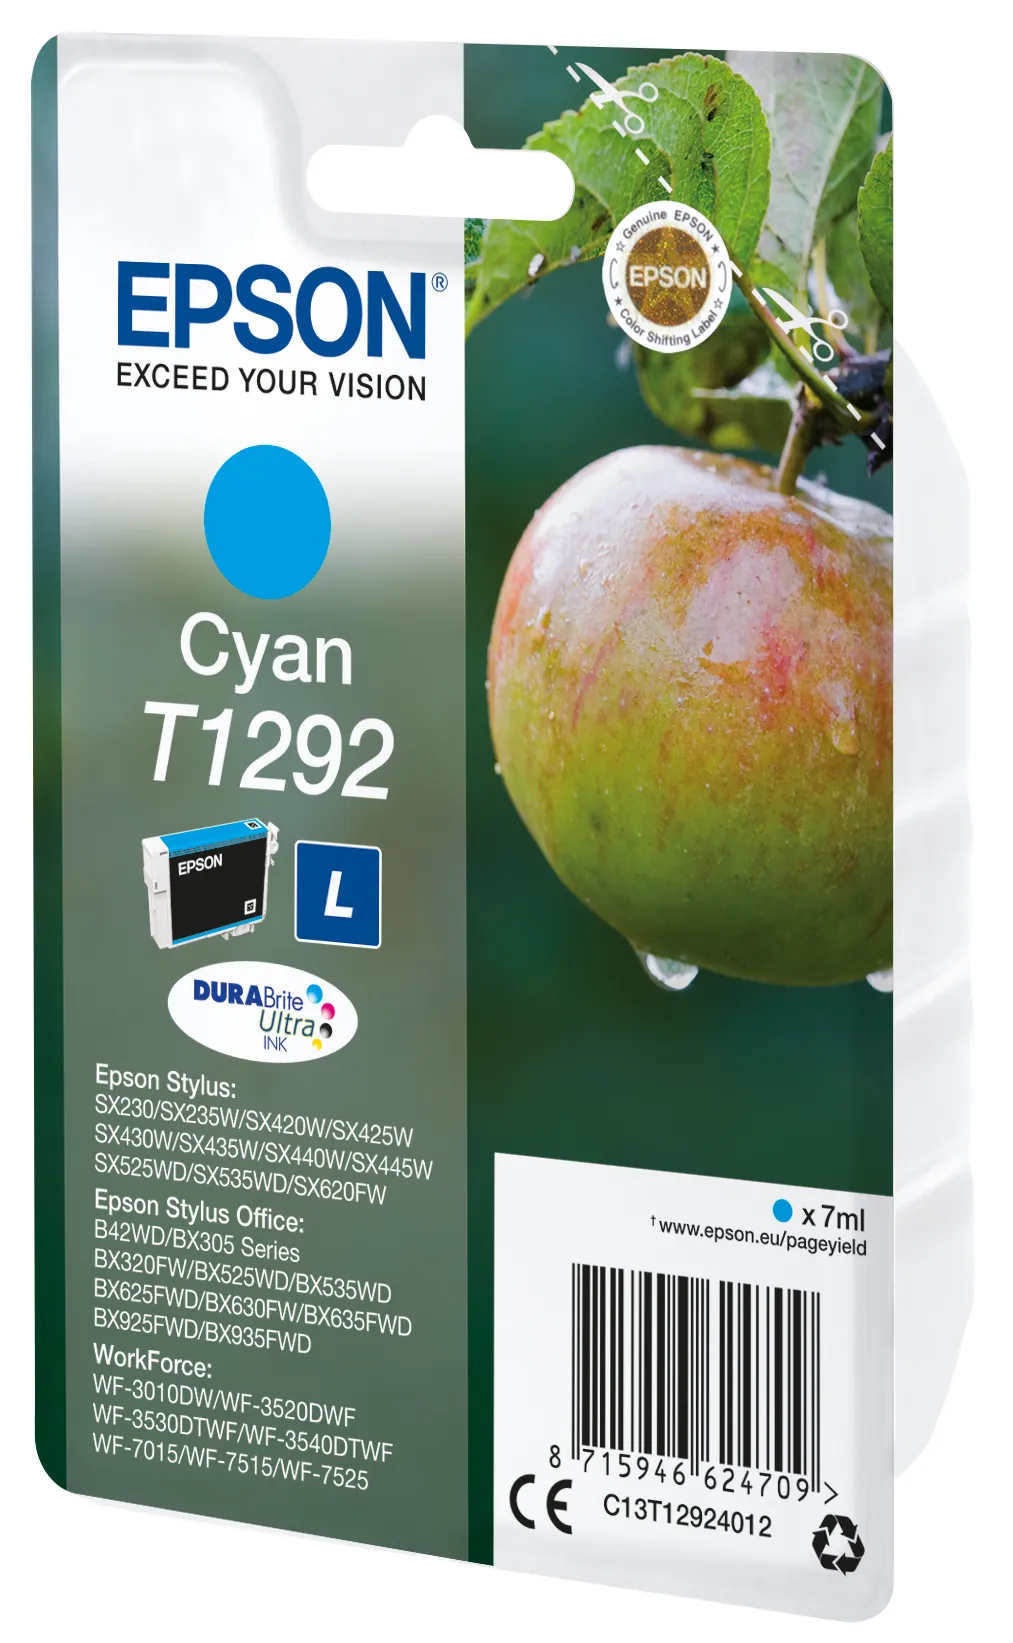 Vente Epson Apple Cartouche "Pomme" - Encre DURABrite Ultra Epson au meilleur prix - visuel 4